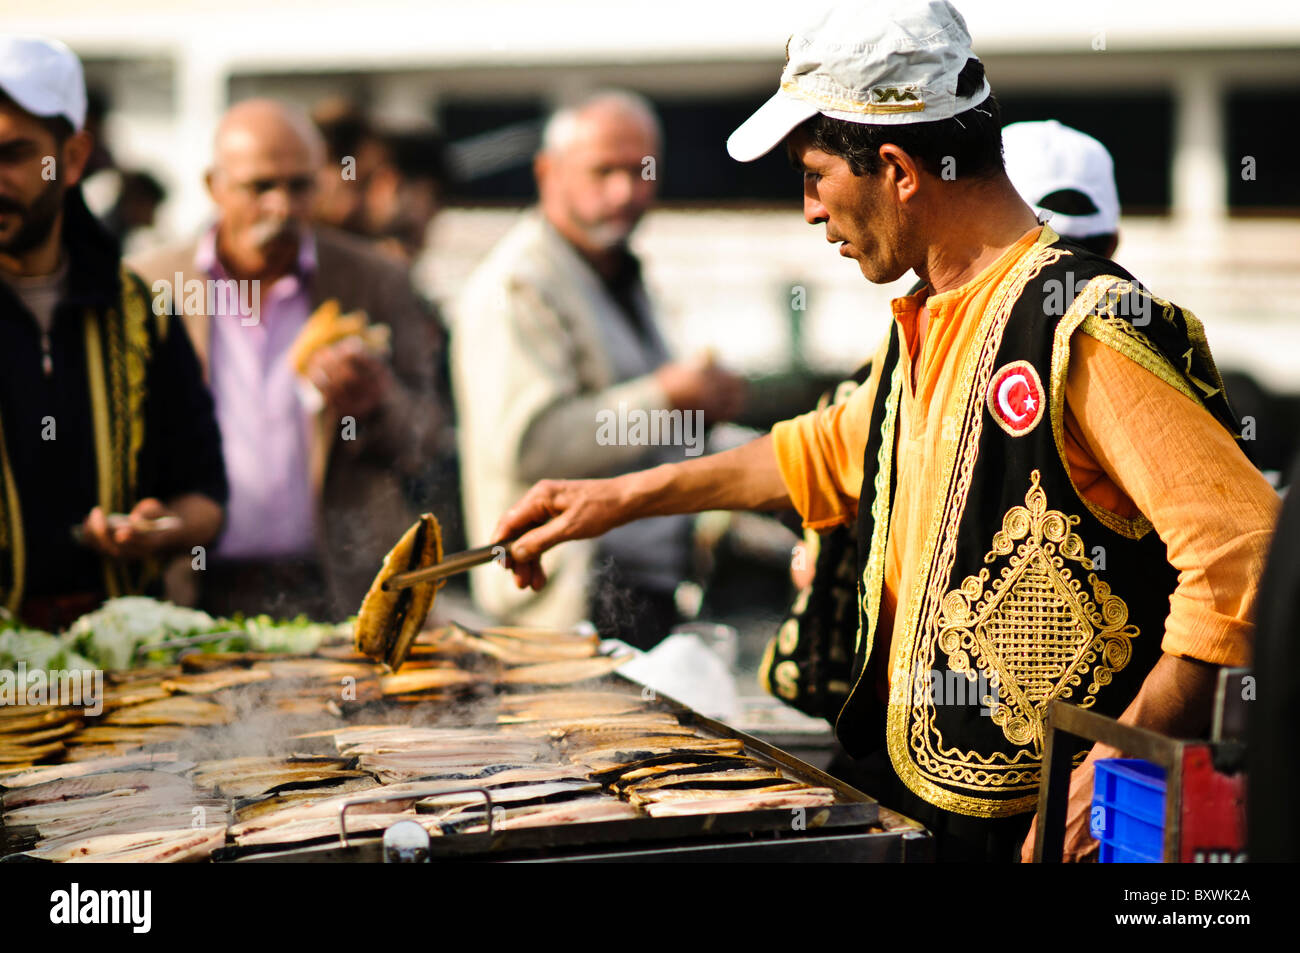 Cocinar el pescado en una parrilla abierta en la costanera de Eminonu en Estambul, cerca del puente de Galata el Cuerno de Oro. Foto de stock